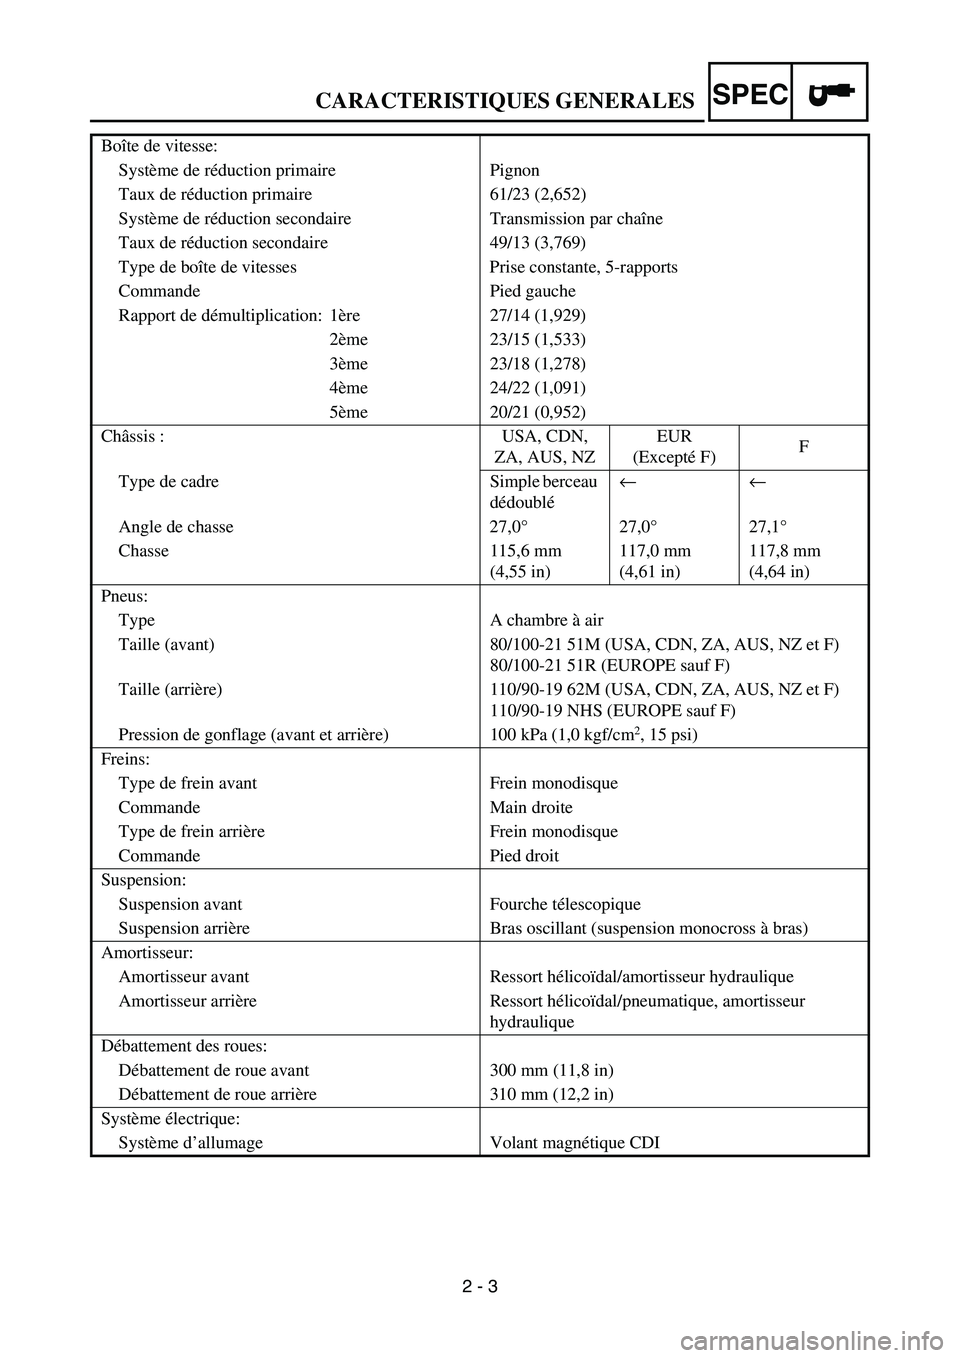 YAMAHA YZ450F 2006  Owners Manual 2 - 3
SPECCARACTERISTIQUES GENERALES
Boîte de vitesse:
Système de réduction primaire Pignon
Taux de réduction primaire 61/23 (2,652)
Système de réduction secondaire Transmission par chaîne
Taux